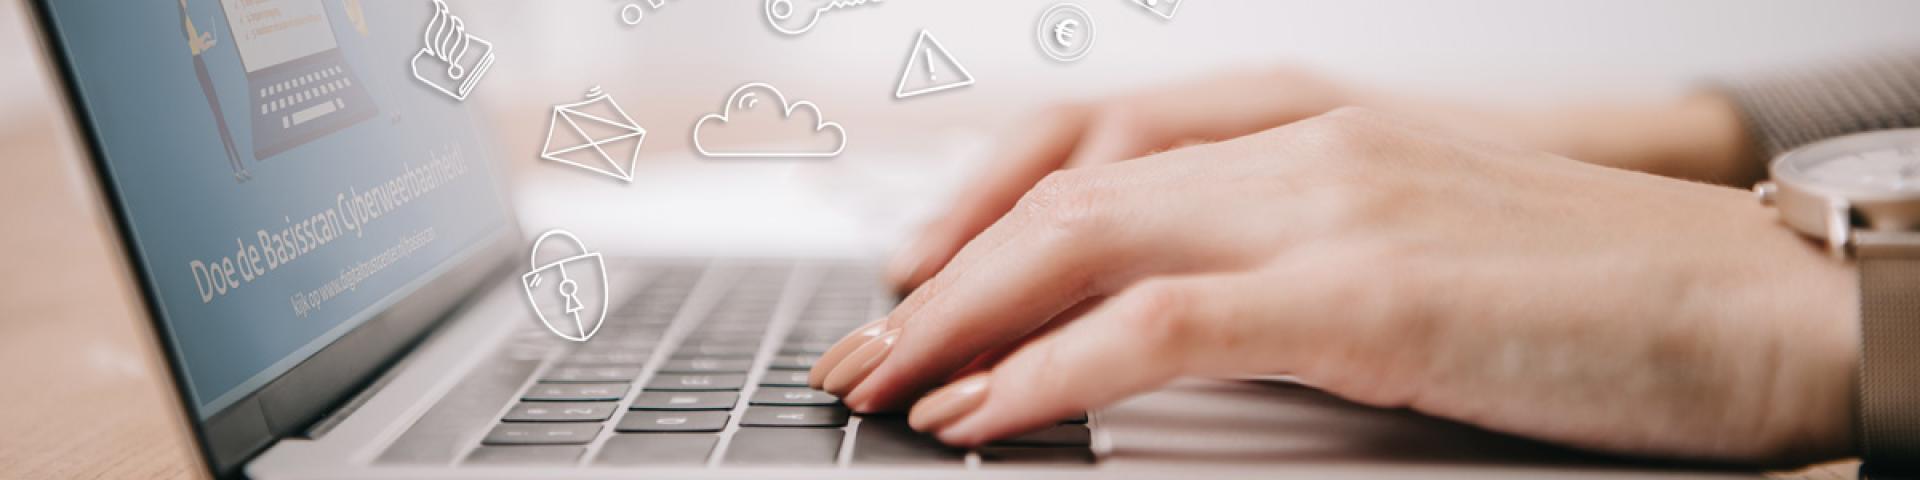 Foto van 2 handen op een laptop, met daarop de basisscan van het Digital Trust Center.